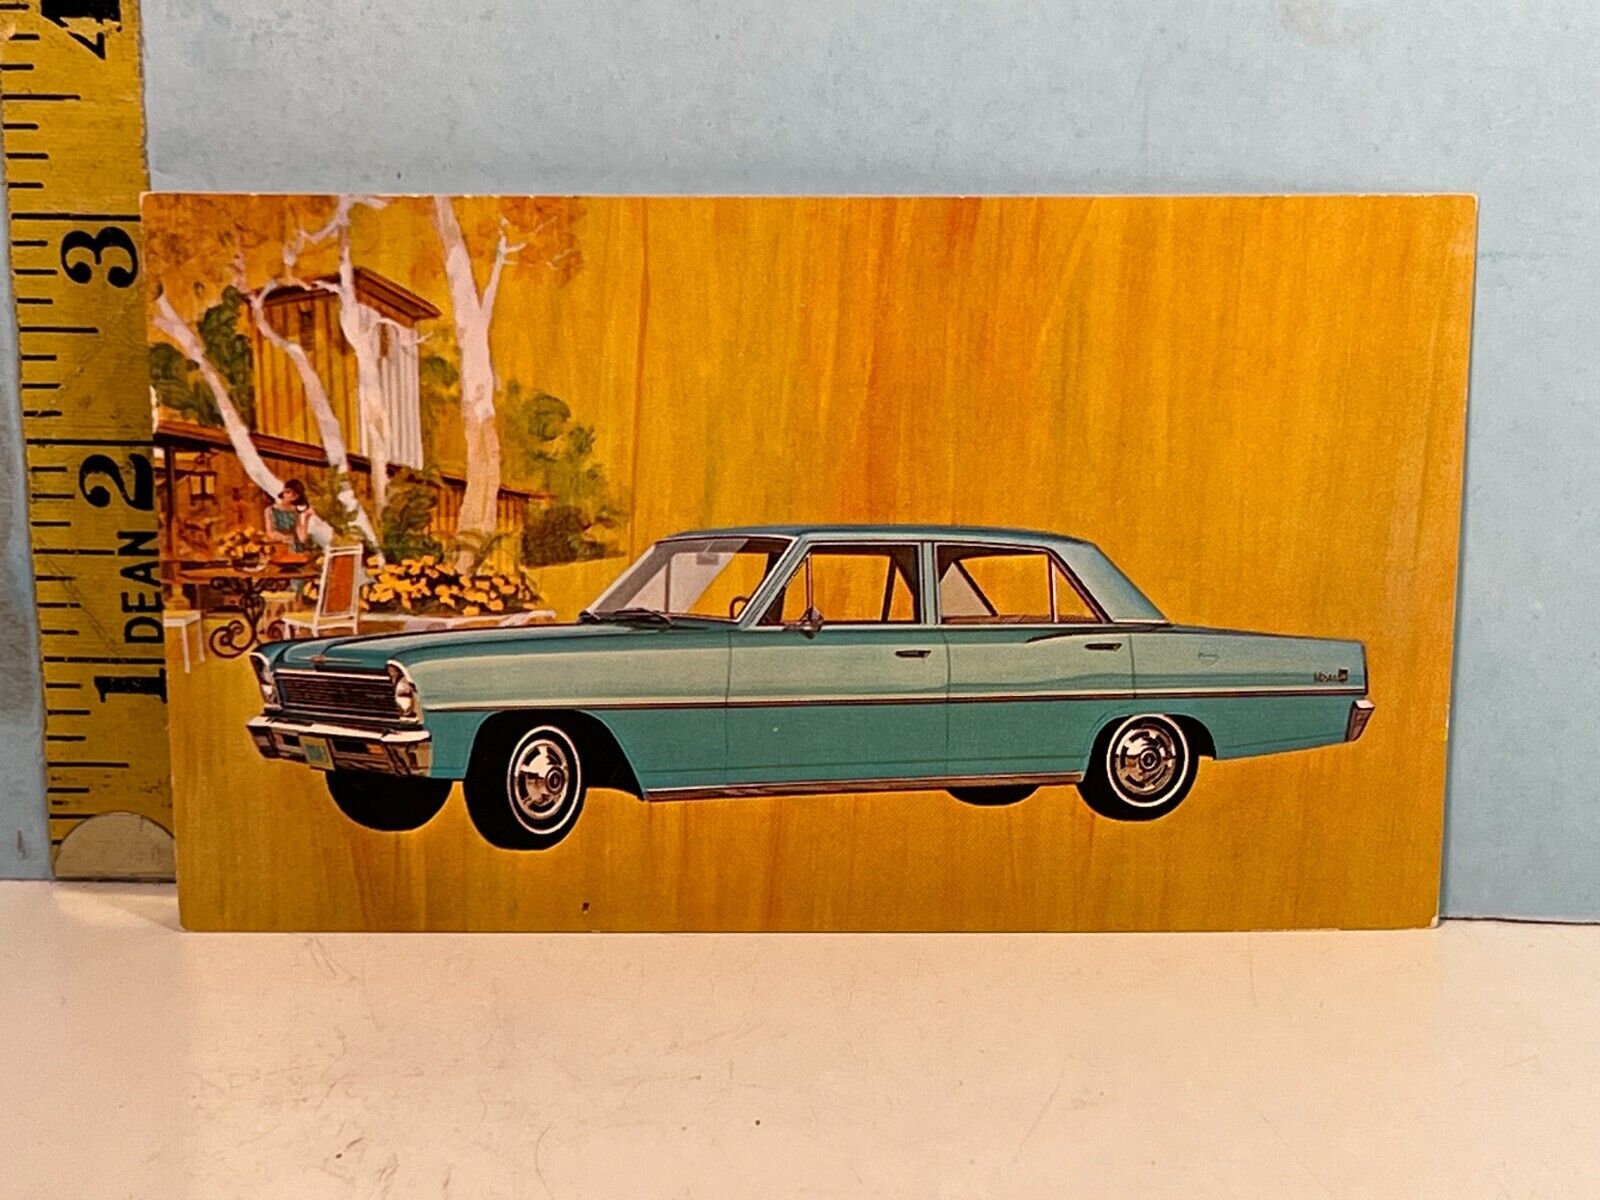 1966 Chevrolet Nova Sedan Automobile Postcard